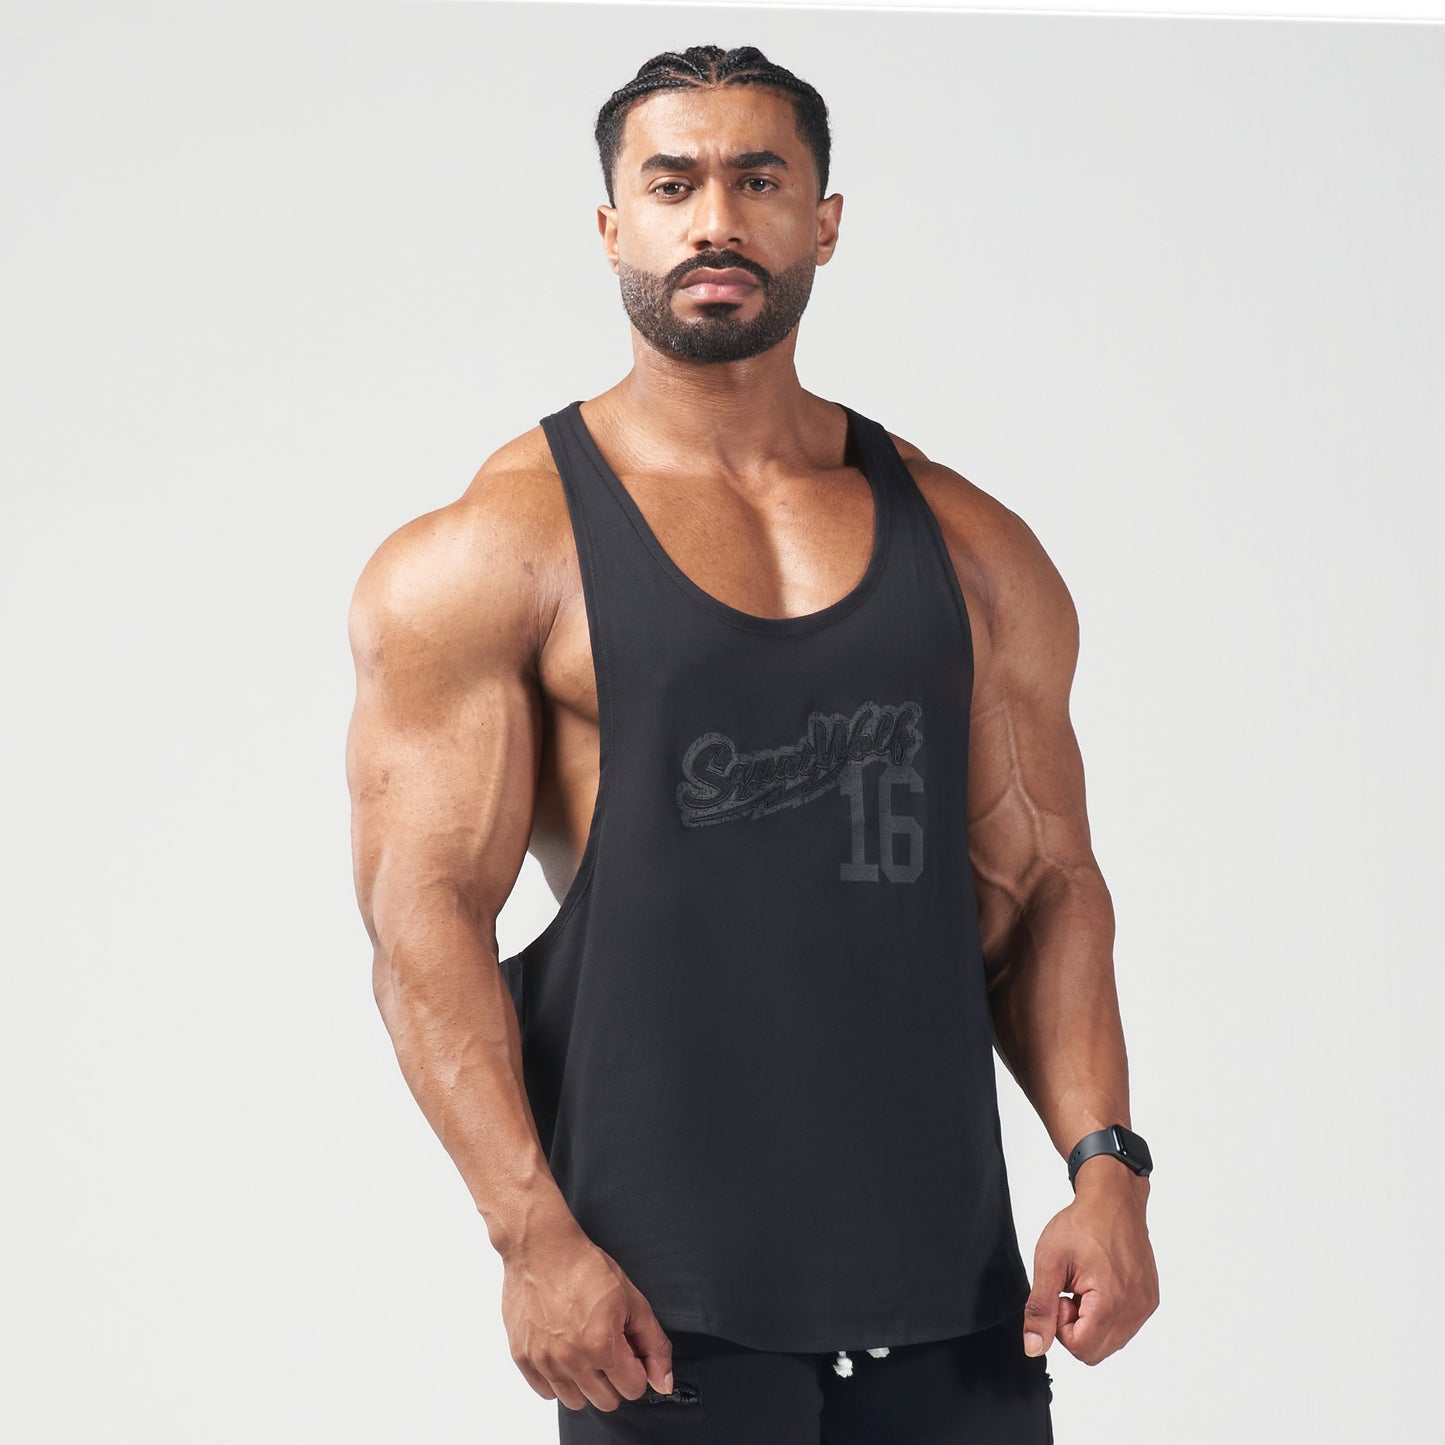 squatwolf-gym-wear-golden-era-vintage-stringer-black-stringer-vests-for-men